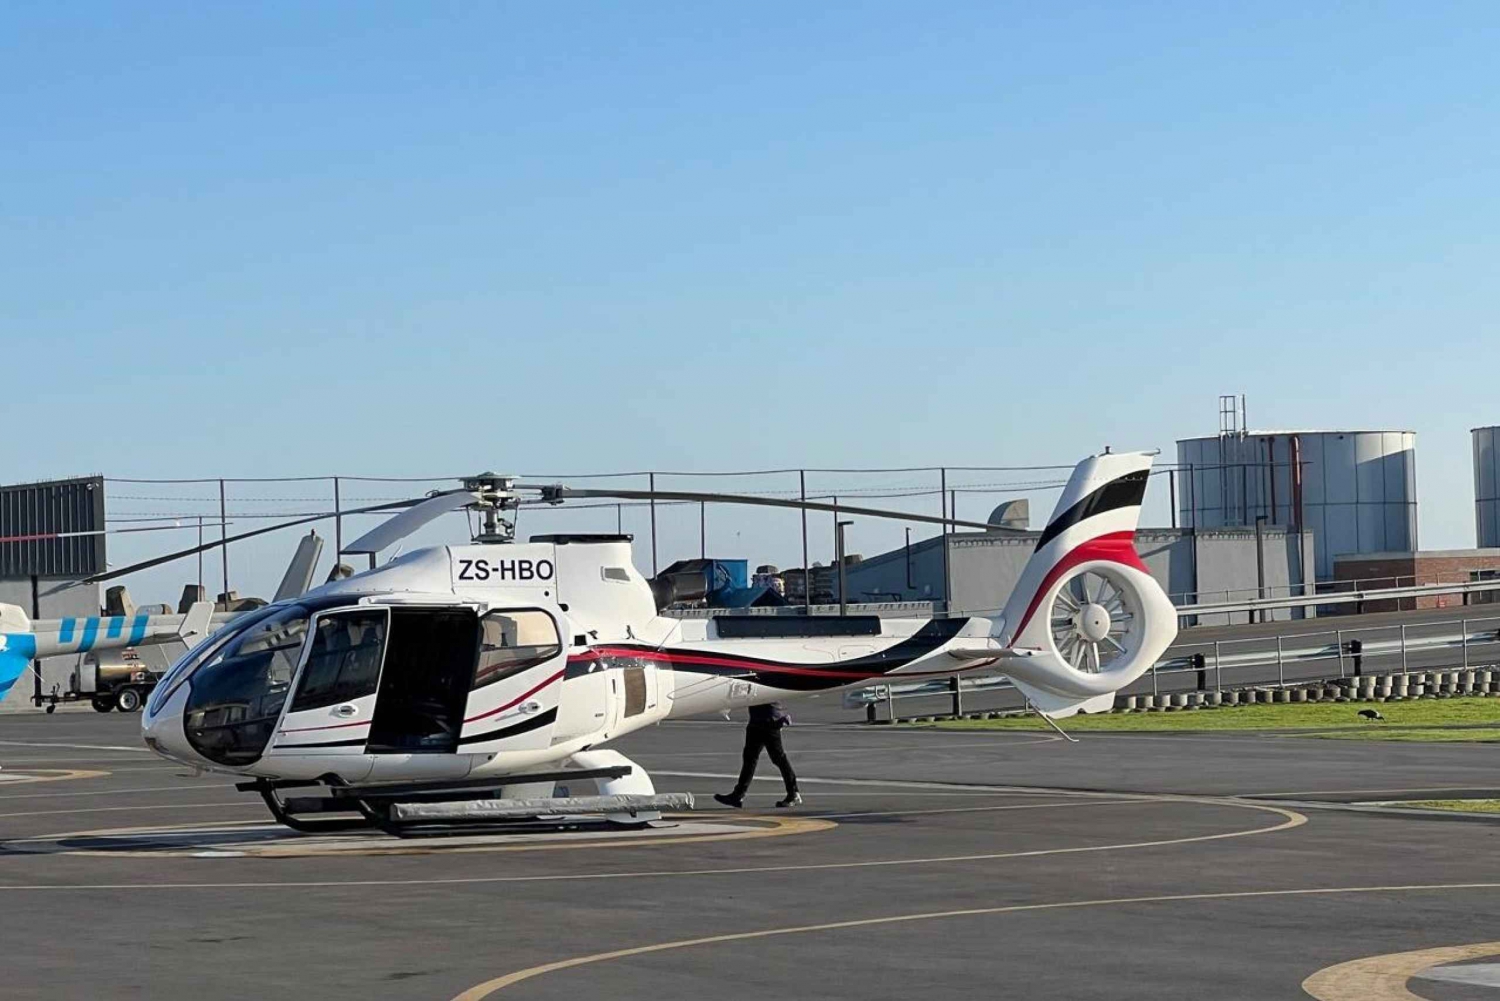 Un tour in elicottero di 20 minuti della regione vinicola di Durbanville